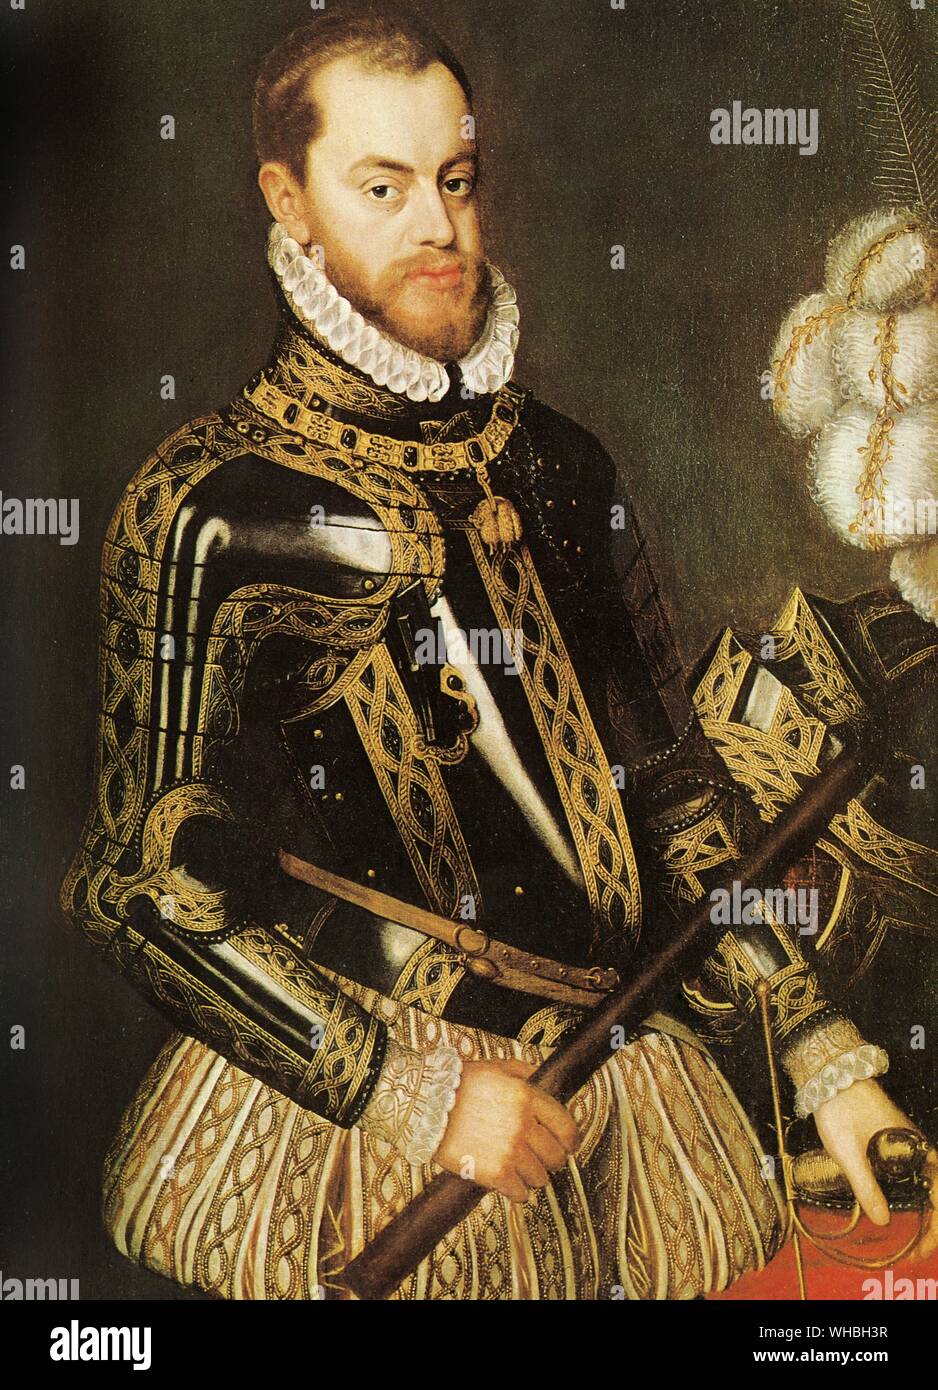 König Philipp II., eine in der Lage aber unflexibel Herrscher, die sich England für das katholische Spanien zu erobern. Philipp II. (21. Mai 1527 bis 13. September 1598), war König von Spanien von 1556 bis 1598 König von Neapel, von 1554 bis 1598, king Consort von England (als Ehemann von Mary I) von 1554 bis 1558, Herr der siebzehn Provinzen (mit verschiedenen Titeln für die einzelnen Gebiete, wie Herzog oder Zählen) von 1556 bis 1581, König von Portugal und der algarves (wie Philip I) von 1580 bis 1598 und König von Chile von 1554 bis 1556. Philipp II. gilt als einer der größten Herrscher in der Geschichte der Stockfoto